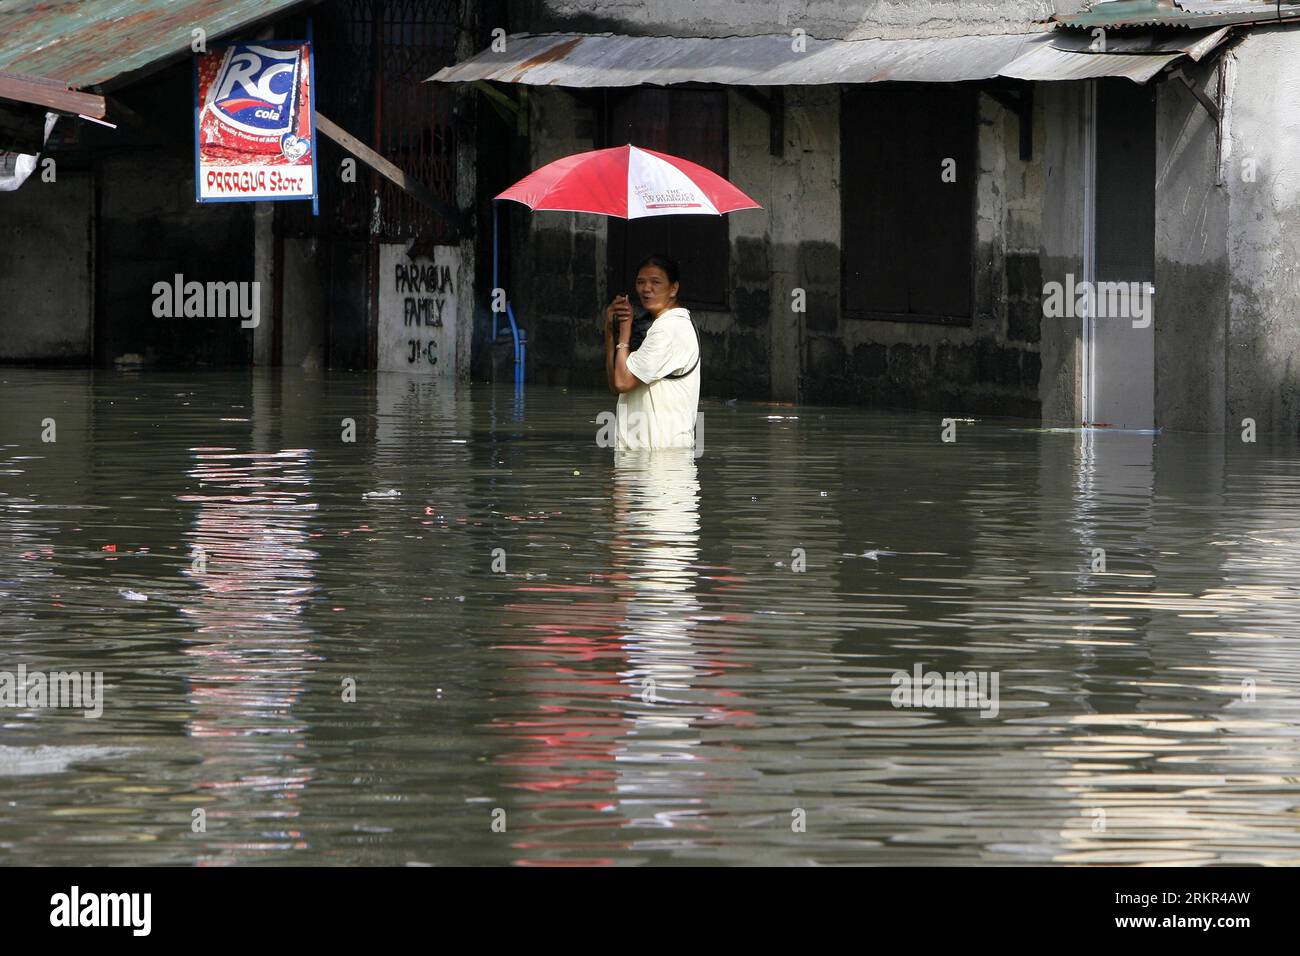 Bildnummer: 58115791 Datum: 18.06.2012 Copyright: imago/Xinhua (120618) -- MANILA, 18. Juni 2012 (Xinhua) -- Ein Bewohner waten auf einer überfluteten Straße in Quezon City, Philippinen, 18. Juni 2012. Gebiete in Metro Manila wurden von schweren Regenfällen überflutet, die durch den Taifun Guchol verursacht wurden, als er die Philippinen verließ. (Xinhua/Rouelle Umali) (zy) PHILIPPINEN-TAIFUN-FLUT PUBLICATIONxNOTxINxCHN Gesellschaft Wetter Regen Hochwasser xjh x0x Uraufführung kurios Komik 2012 quer Highlight 58115791 Datum 18 06 2012 Copyright Imago XINHUA Manila 18 Juni 2012 XINHUA a Resident Wade AUF einer überfluteten Straße in Quezon City The Stockfoto